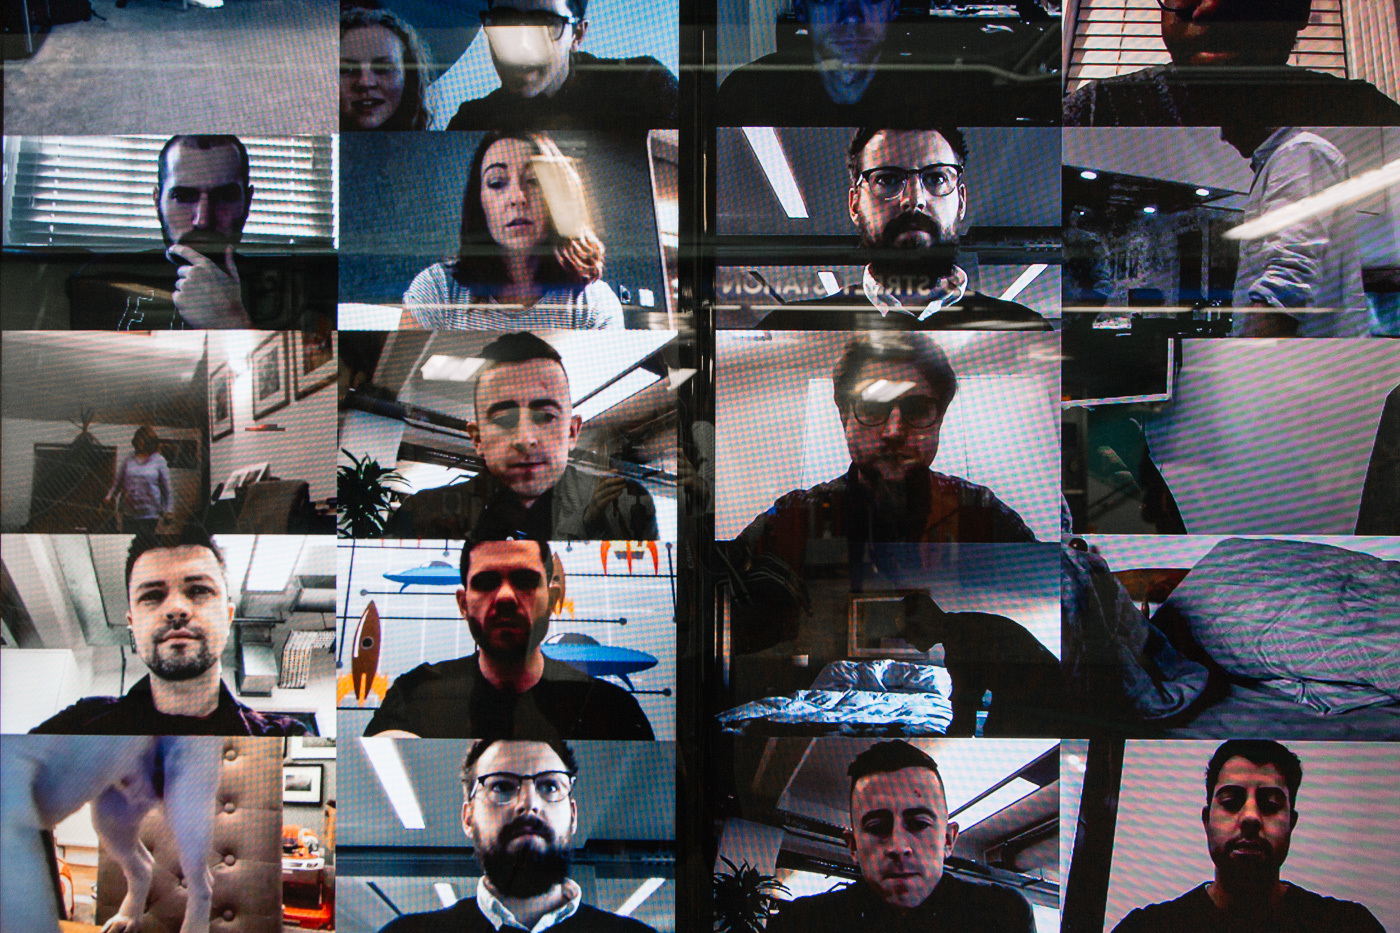 Pop-up Netflix - Black Mirror à Old Street Station, Londres. Ecrans de surveillance avec des visages.